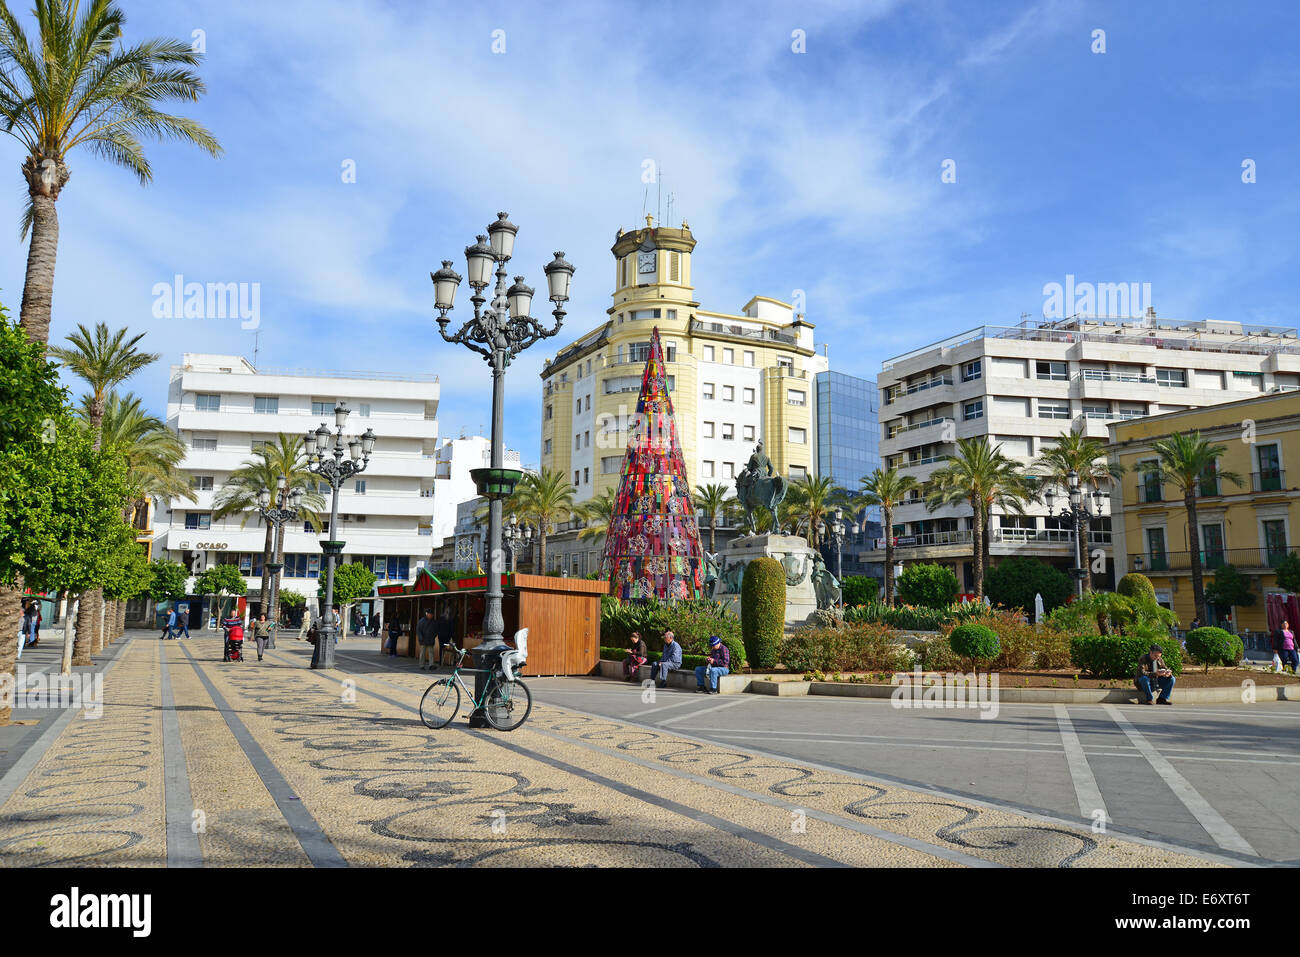 Plaza del Arenal, Jerez de la Frontera, Province of Cádiz, Andalusia, Kingdom of Spain Stock Photo